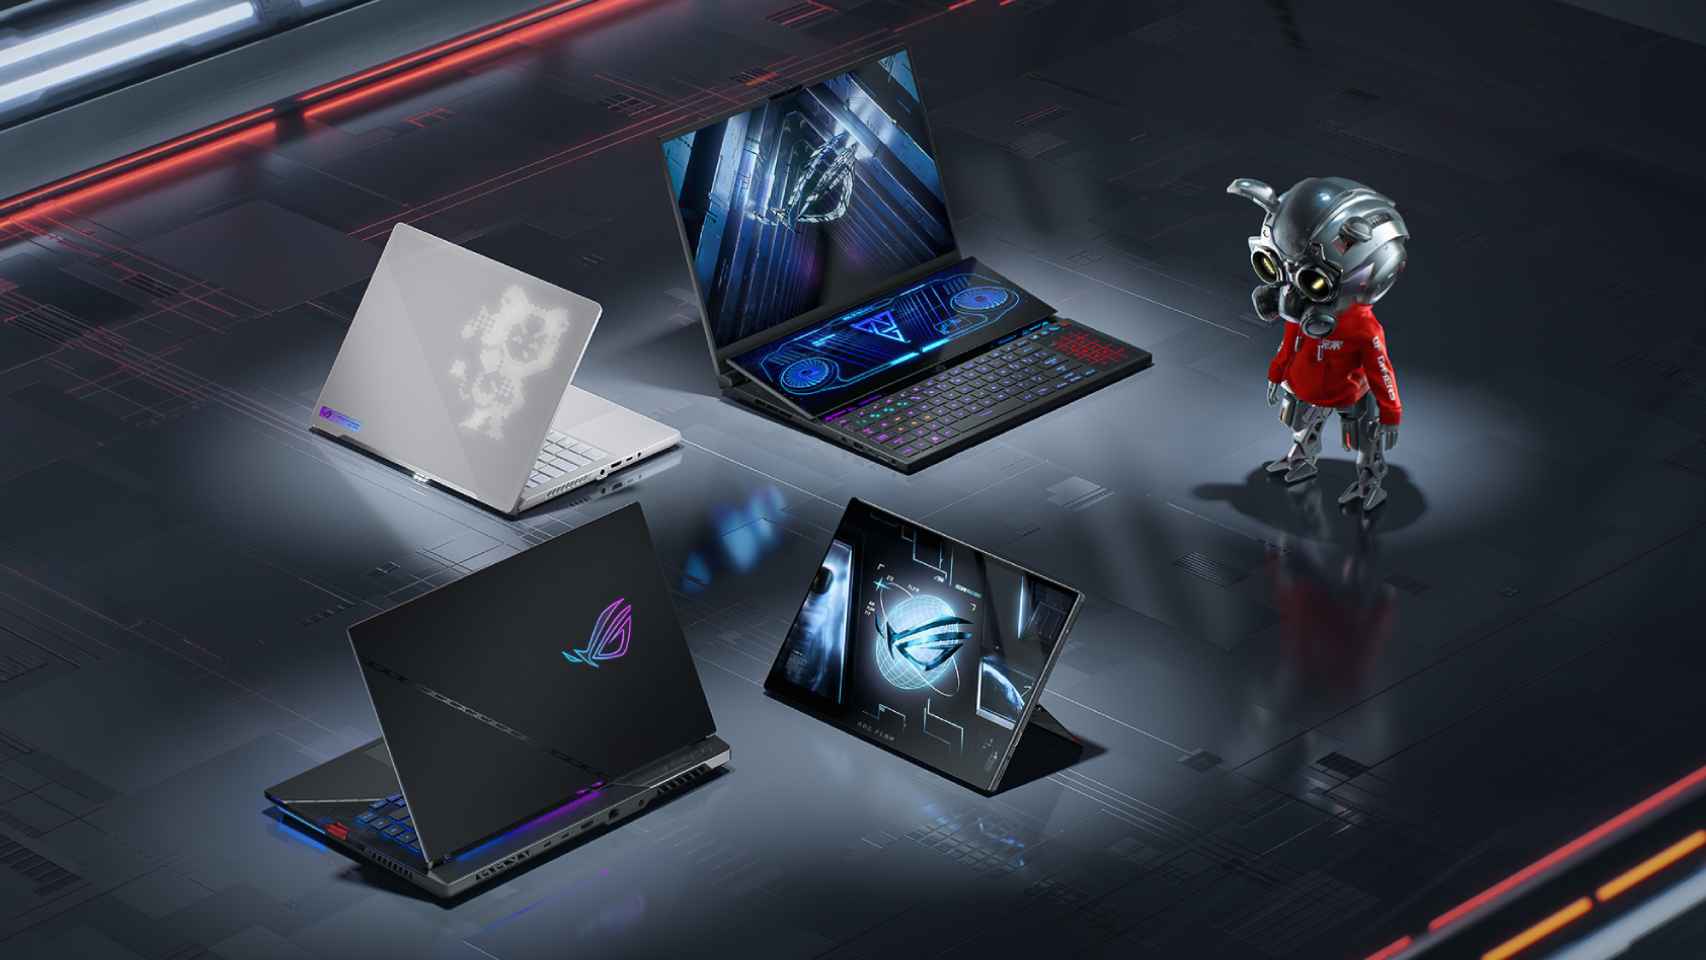 ASUS ROG presenta sus nuevos portátiles gaming.